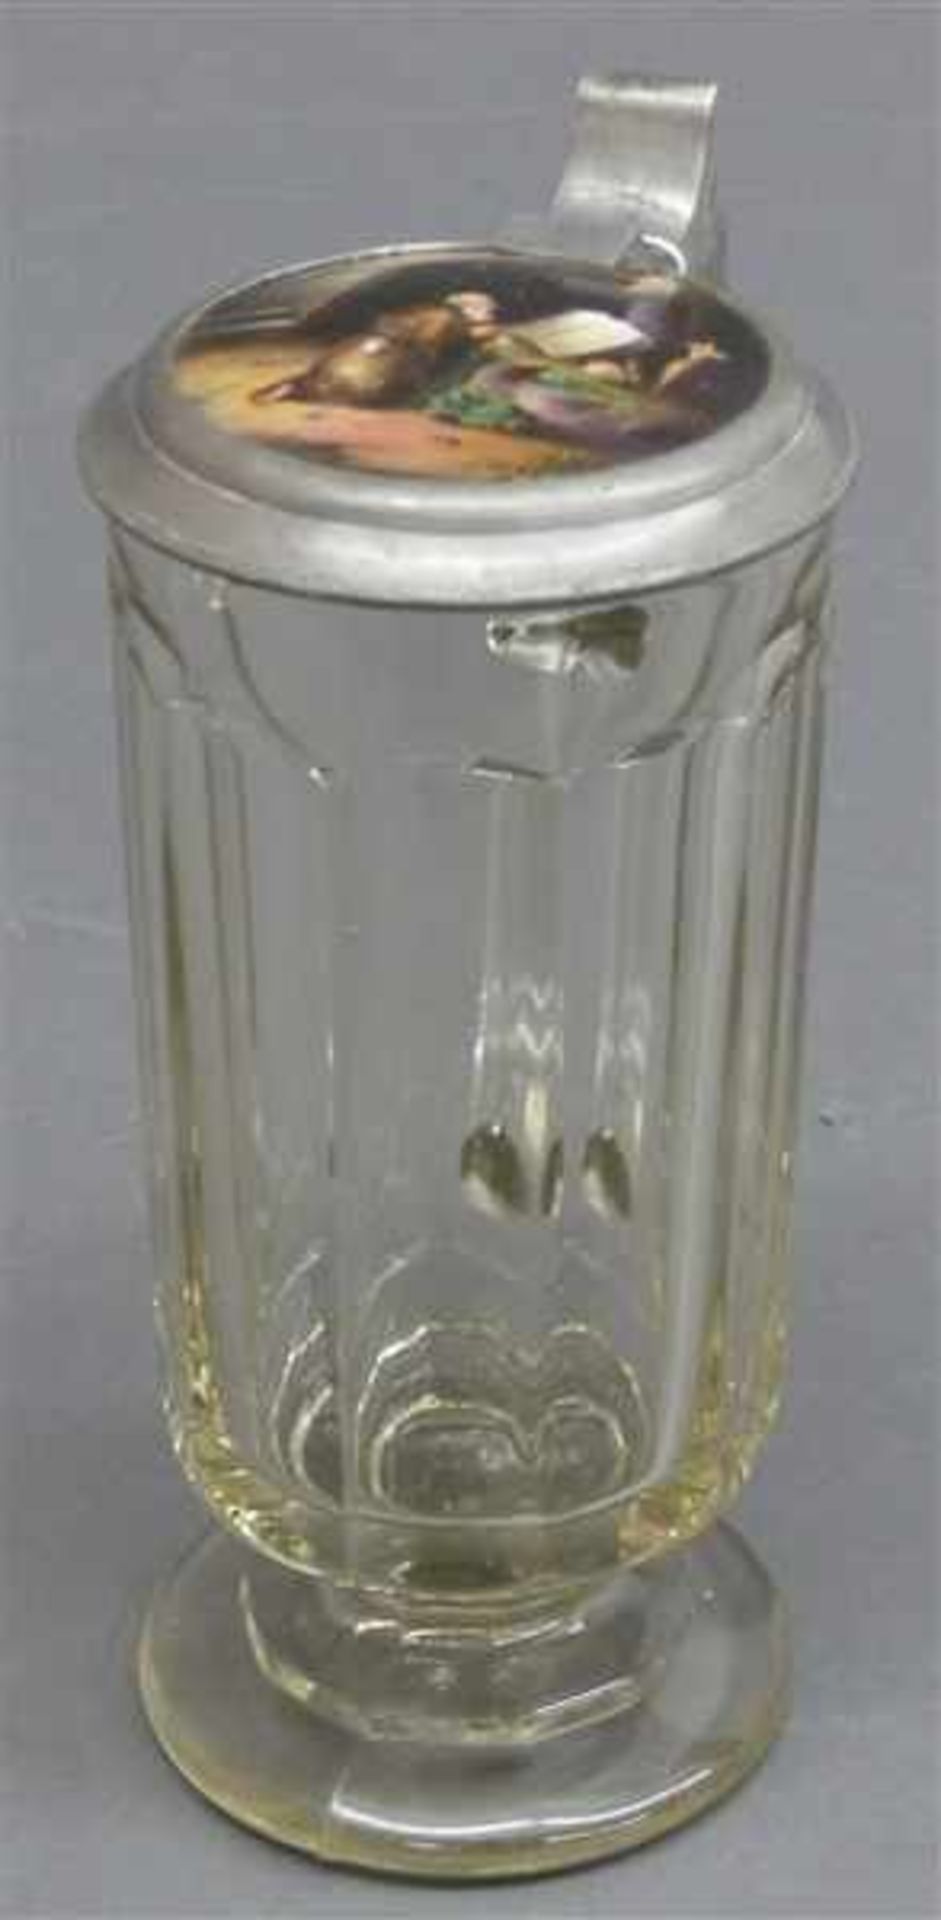 Bierkrug, 19. Jh.farbloses Pressglas, Zinndeckel mit Porzellaneinlage, "Einsiedler", h 19 cm,